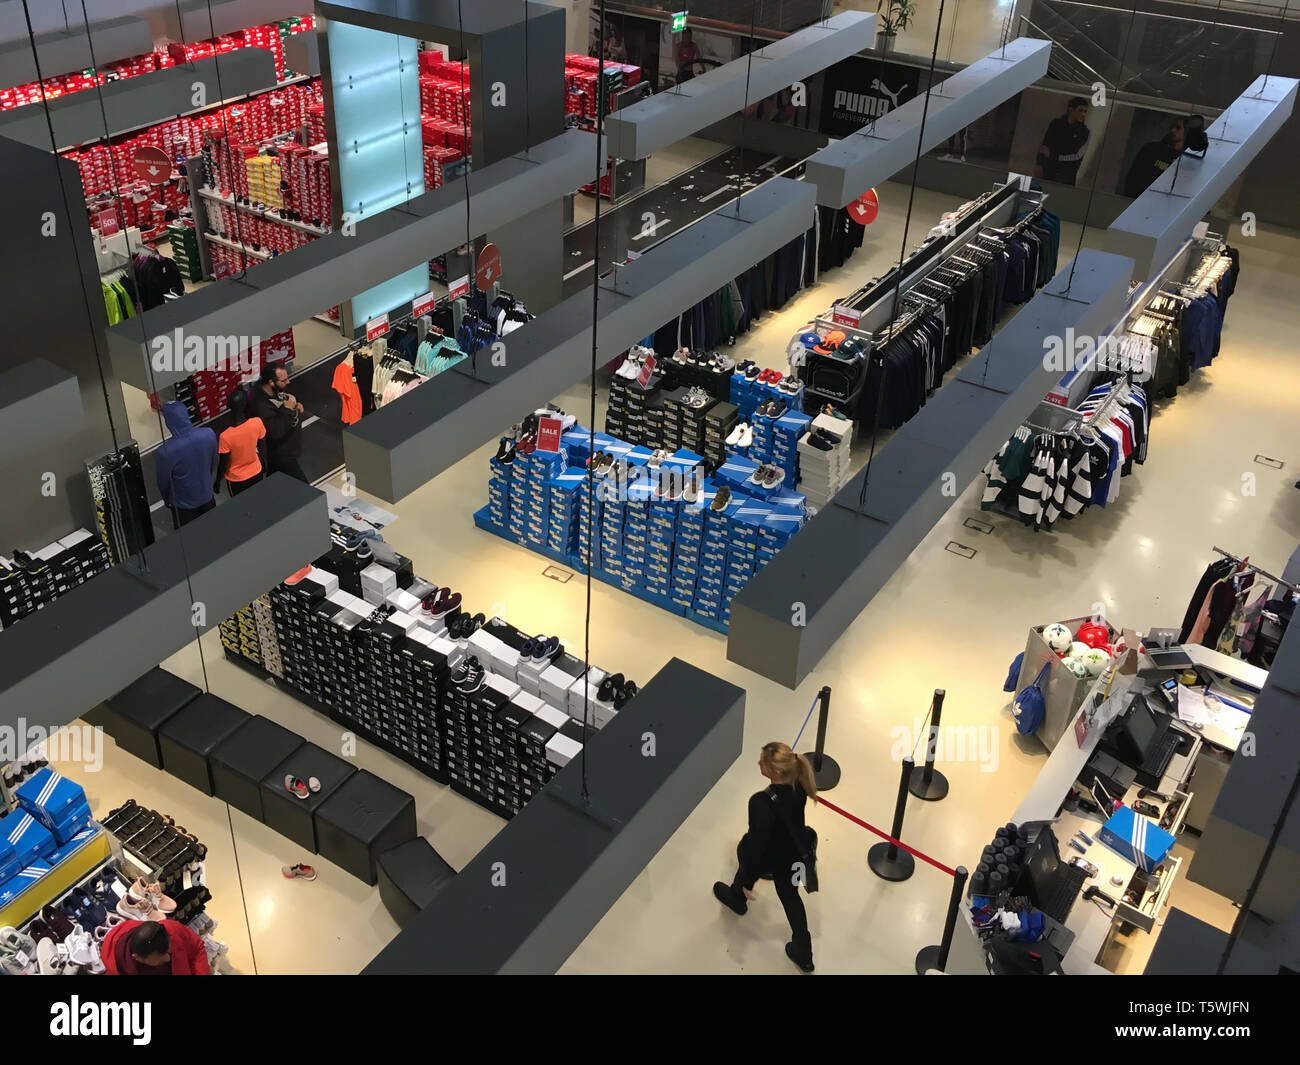 Athen, Griechenland - 22. FEBRUAR 2019: die Menschen an der Sportswear Abschnitt einer Shopping Mall. Boxen mit Sneaker Schuhe und Racks von Kleidung. Stockfoto